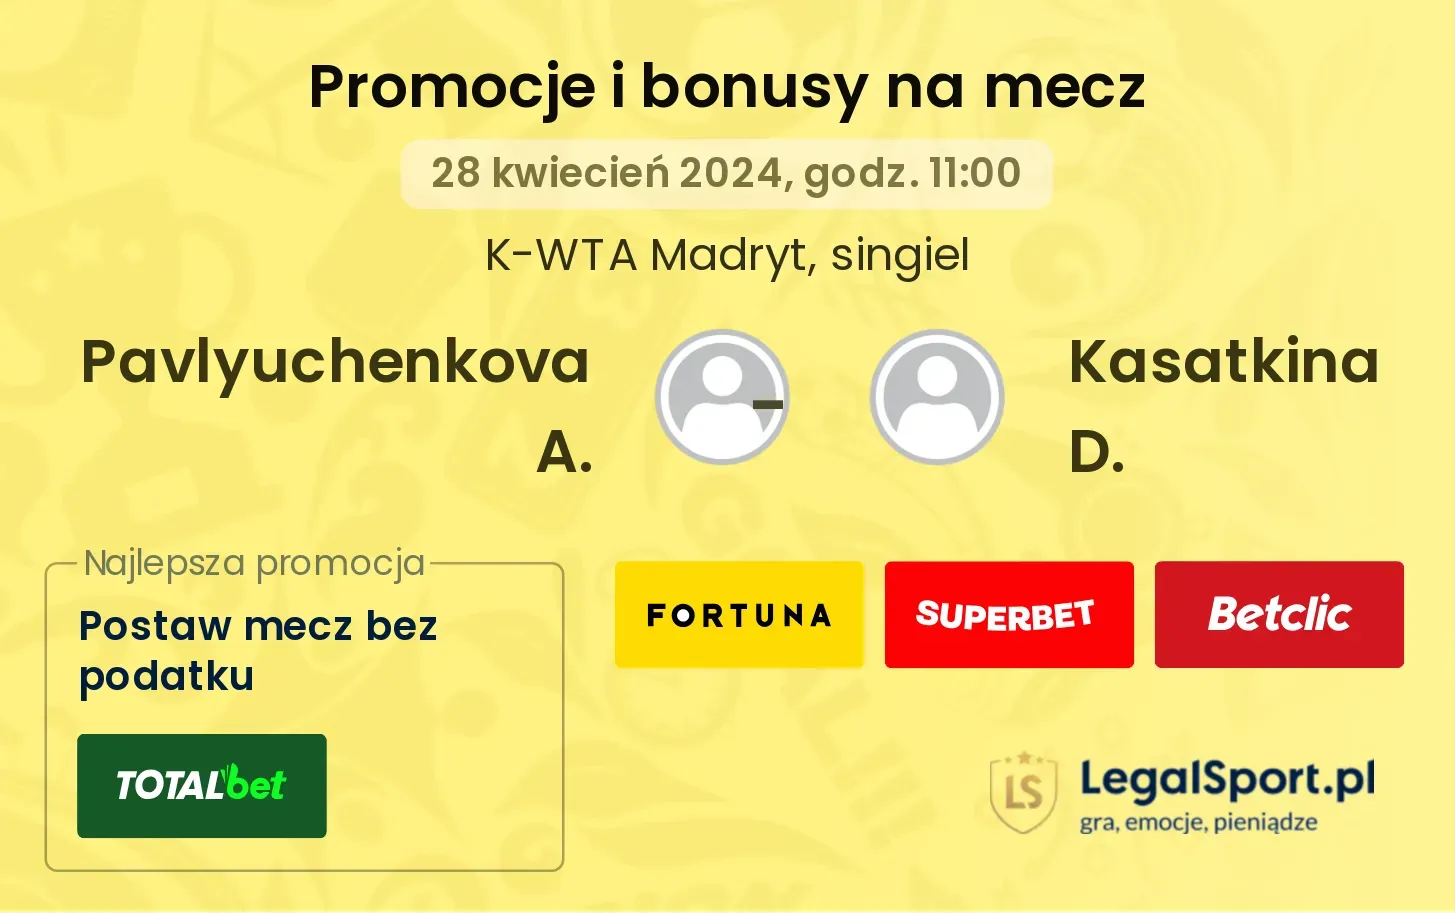 Pavlyuchenkova A. - Kasatkina D. promocje bonusy na mecz